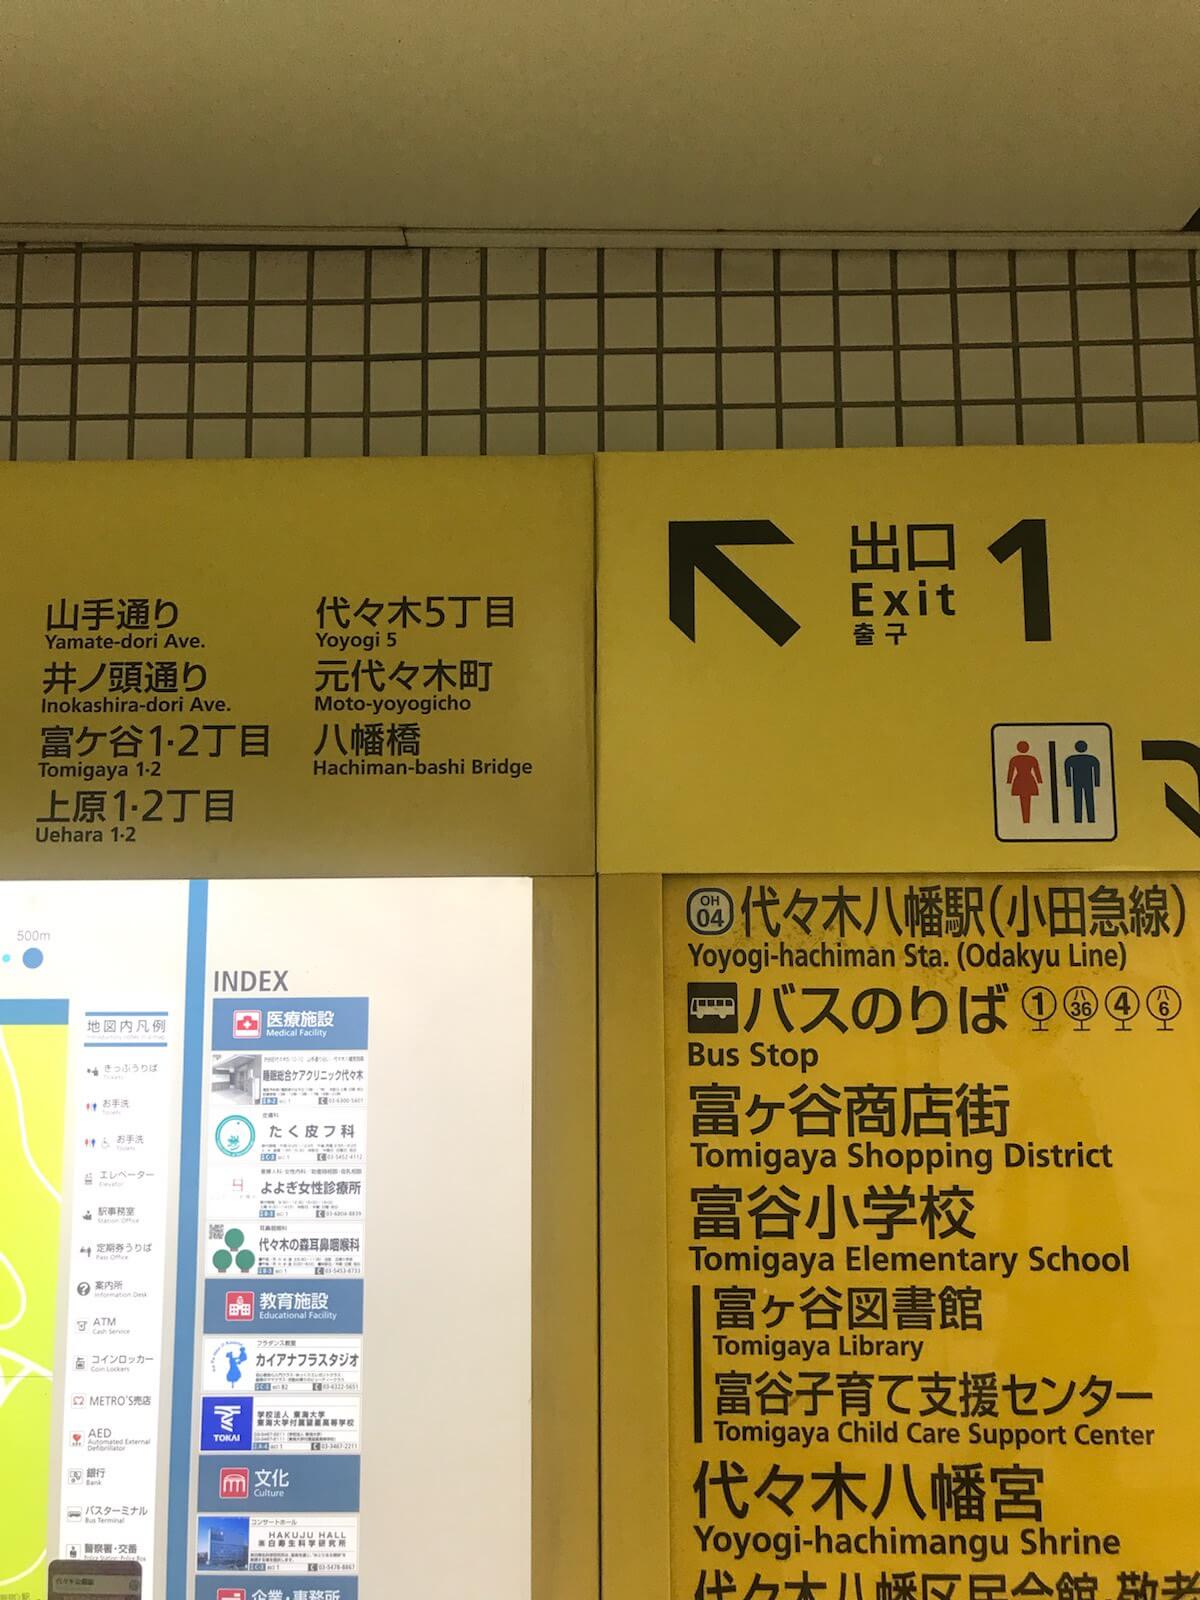 東京メトロ千代田線「代々木公園駅」からのアクセス